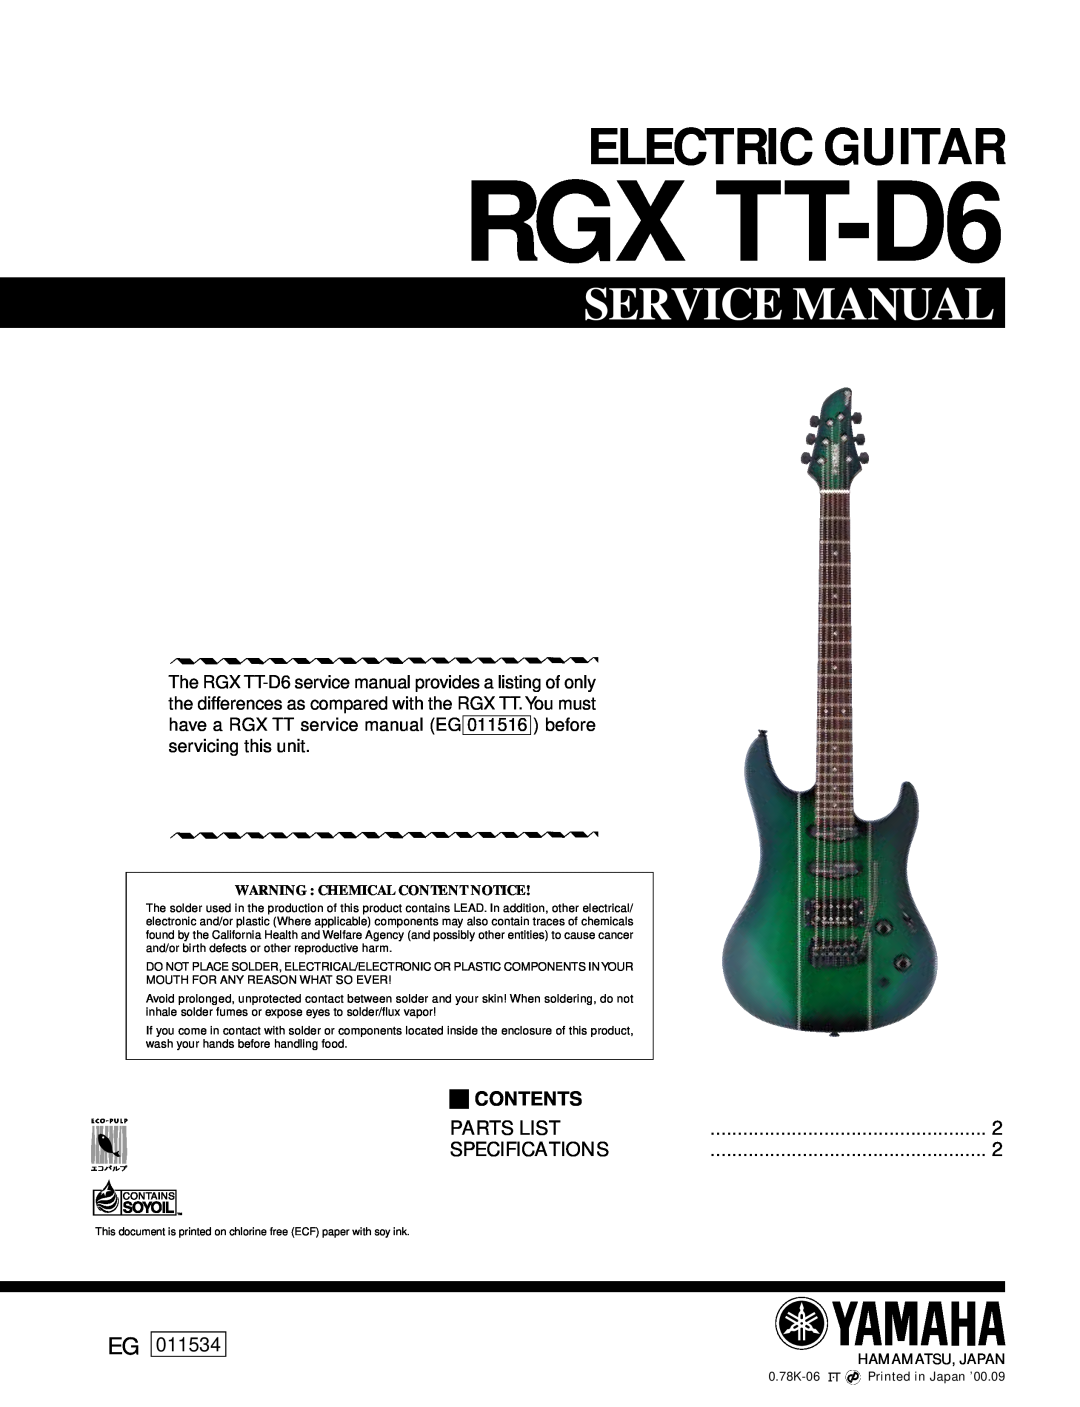 Yamaha Yamaha RGX-TT D6 Electric Guitar service manual Warning Chemical Content Notice, RGX TT-D6, Service Manual, 011534 